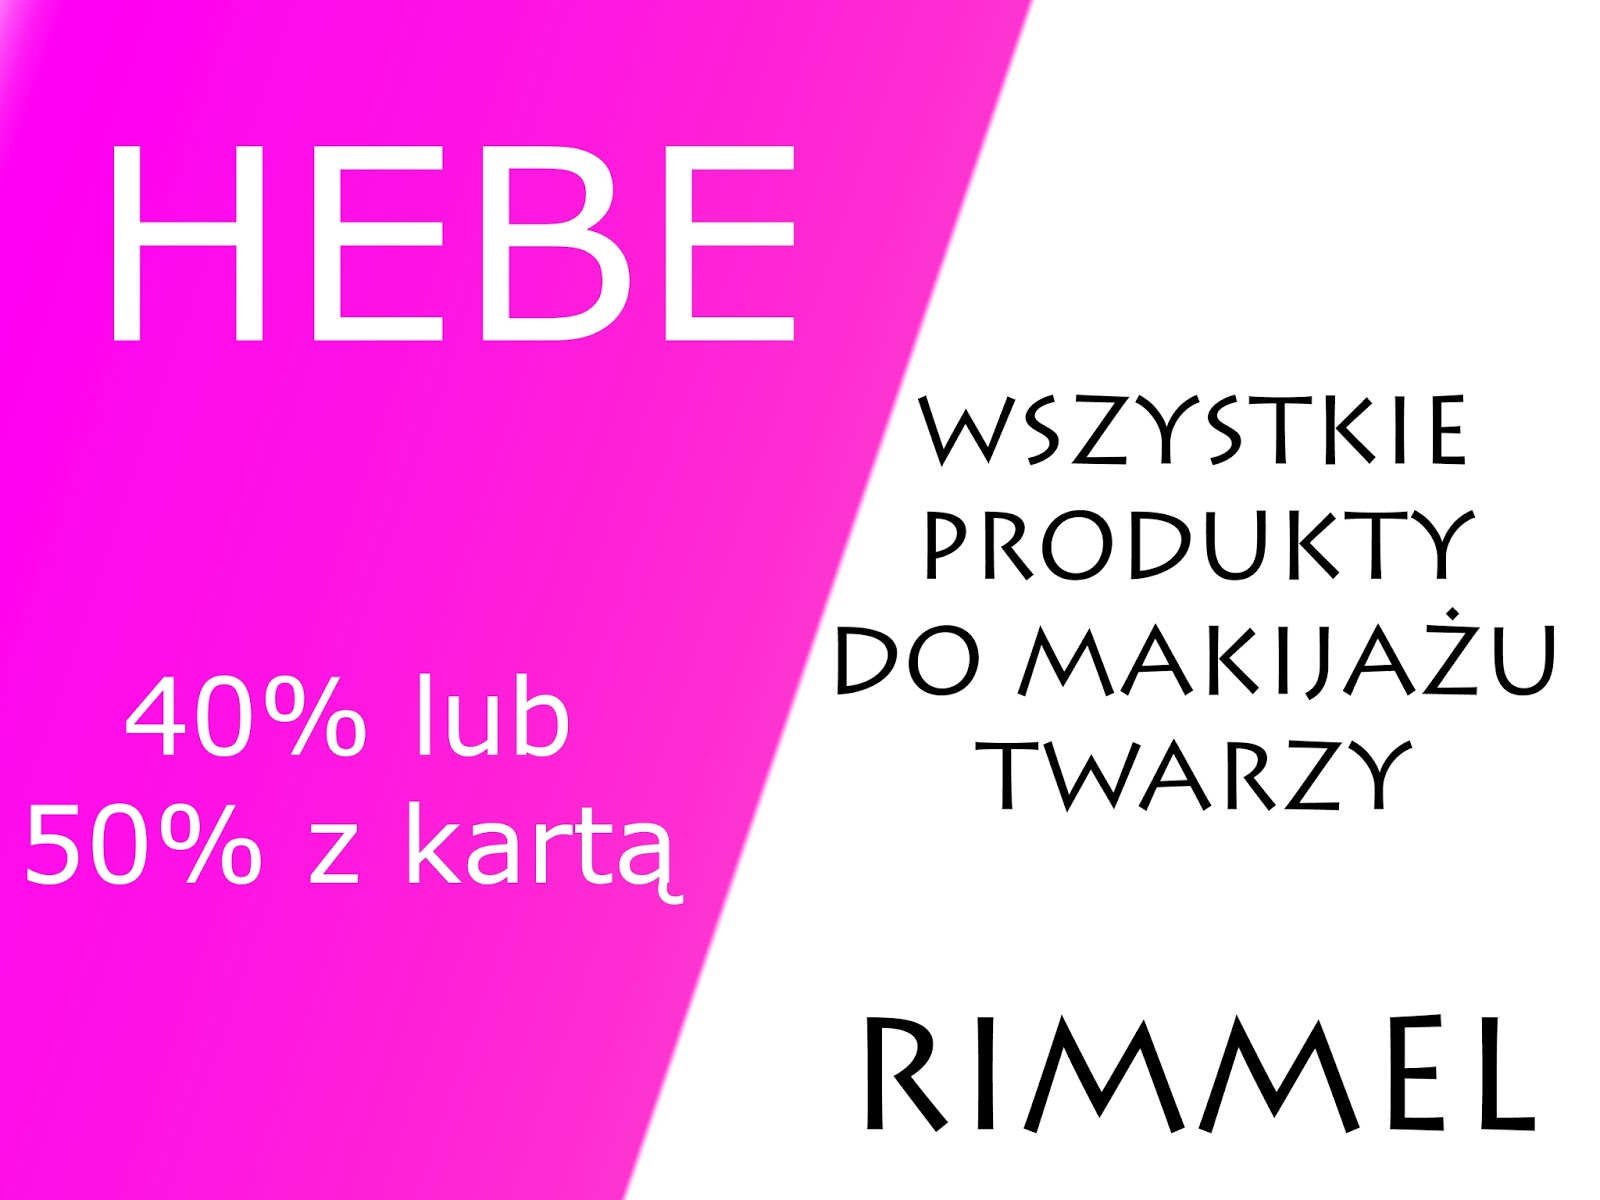 Zona Bloguje - swiat okiem kobiety: Promocja HEBE - produkty do makijazu RIMMEL az 40% (z karta 50%)